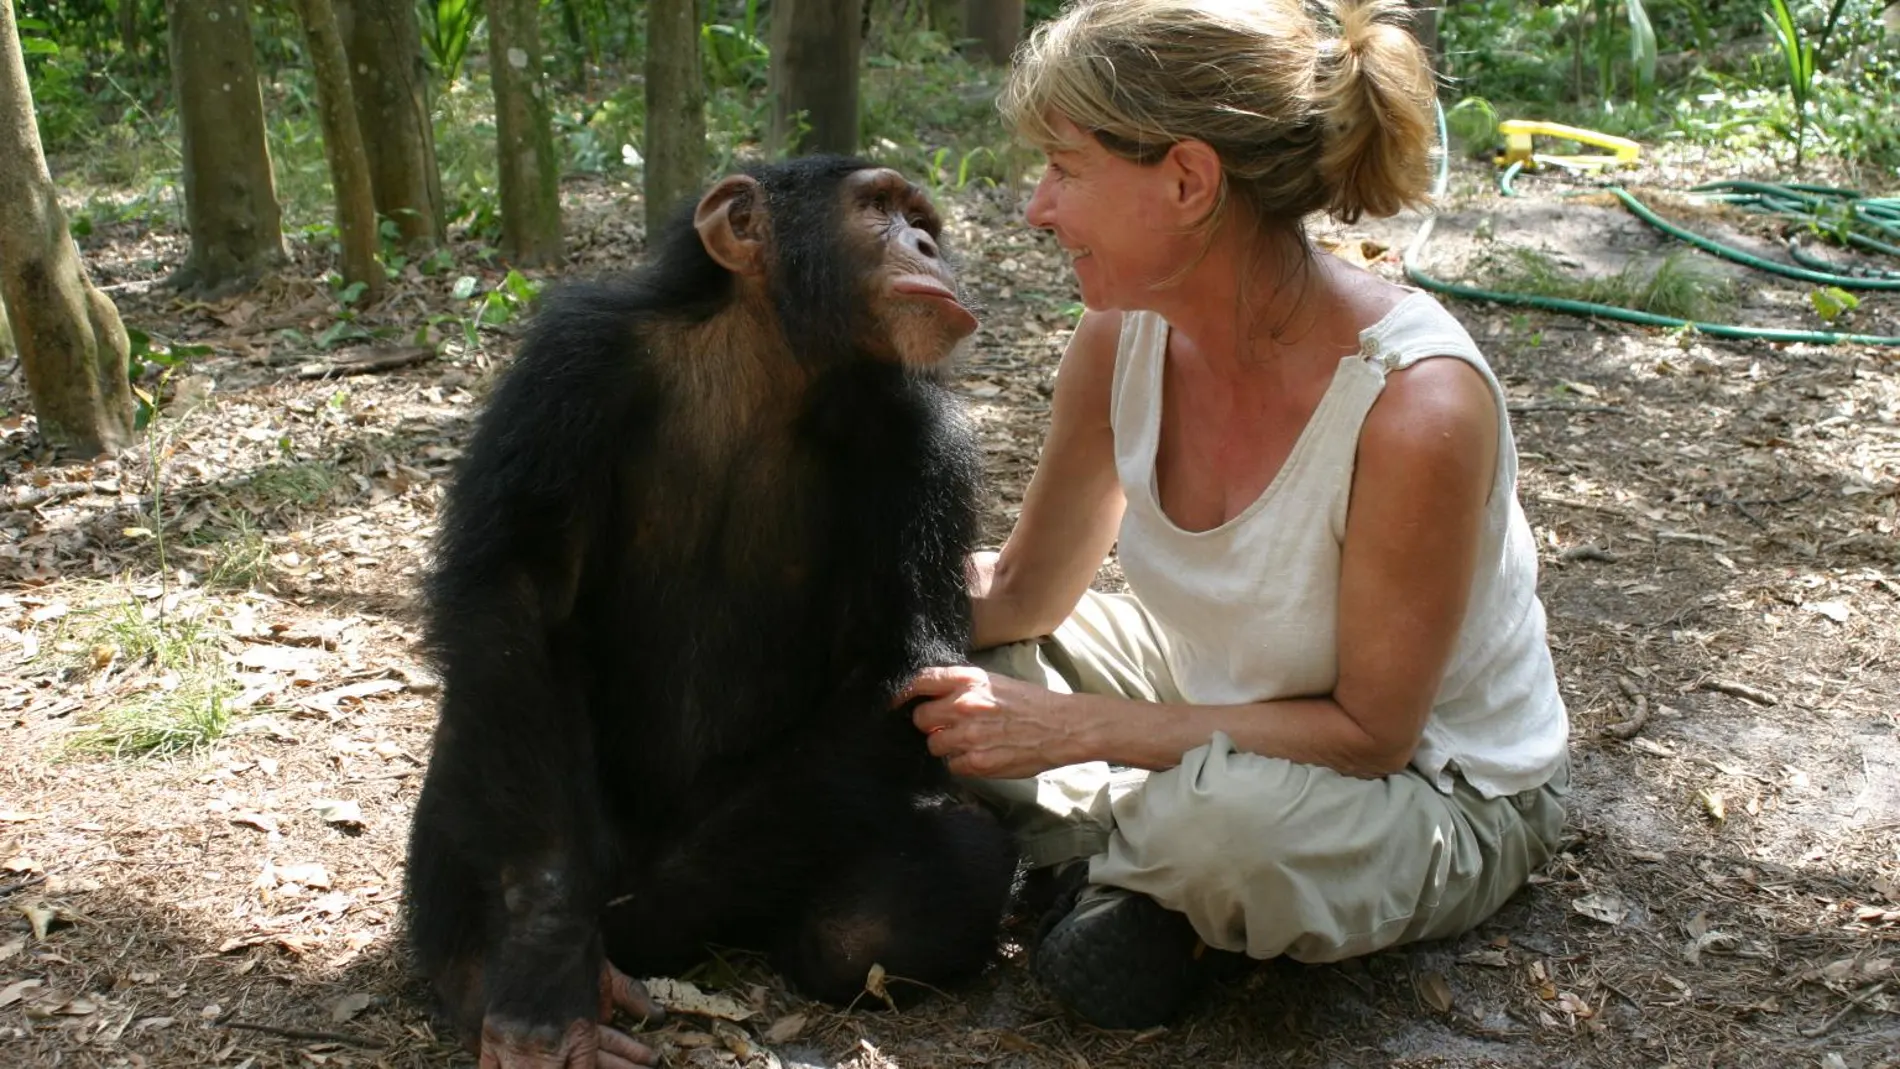 Un chimpancé y una mujer sentados en el suelo mirándose intensamente